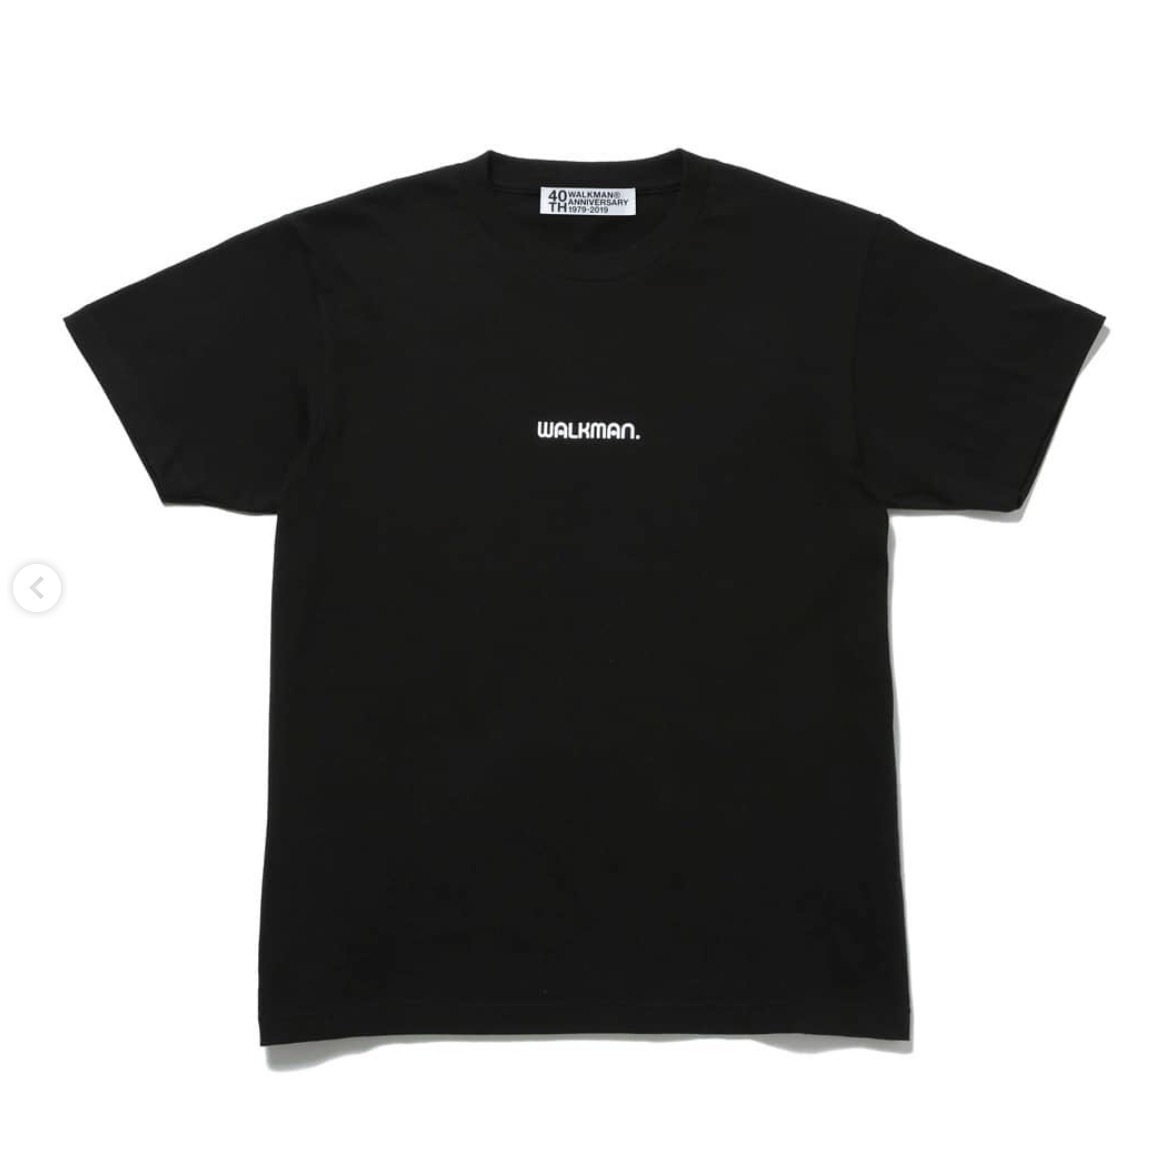 【オフィシャル品】SONY WALKMAN Tシャツ ウォークマン ソニー 40周年 Mサイズ 黒 THE CONVENI